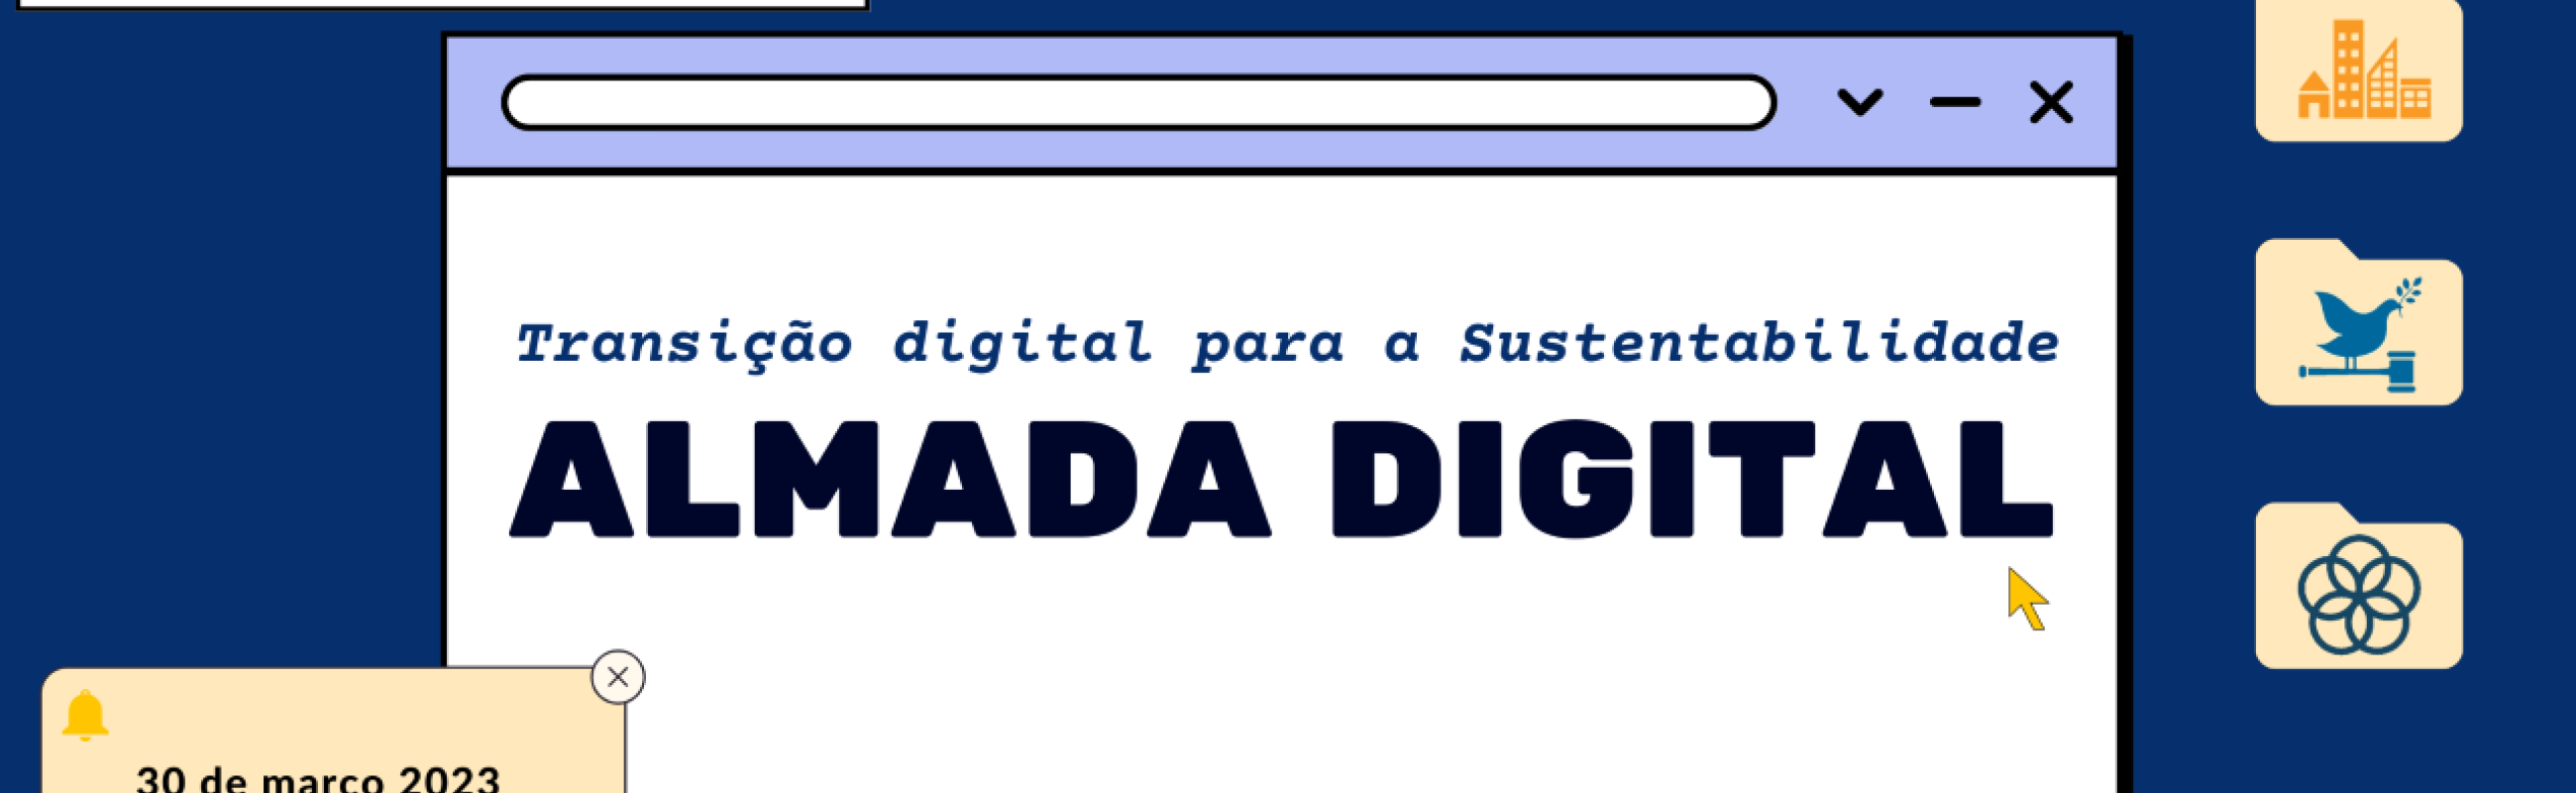 Inovação & Desenvolvimento Local com o Município de Almada. Almada Digital rumo a Transição Digital para a Sustentabilidade